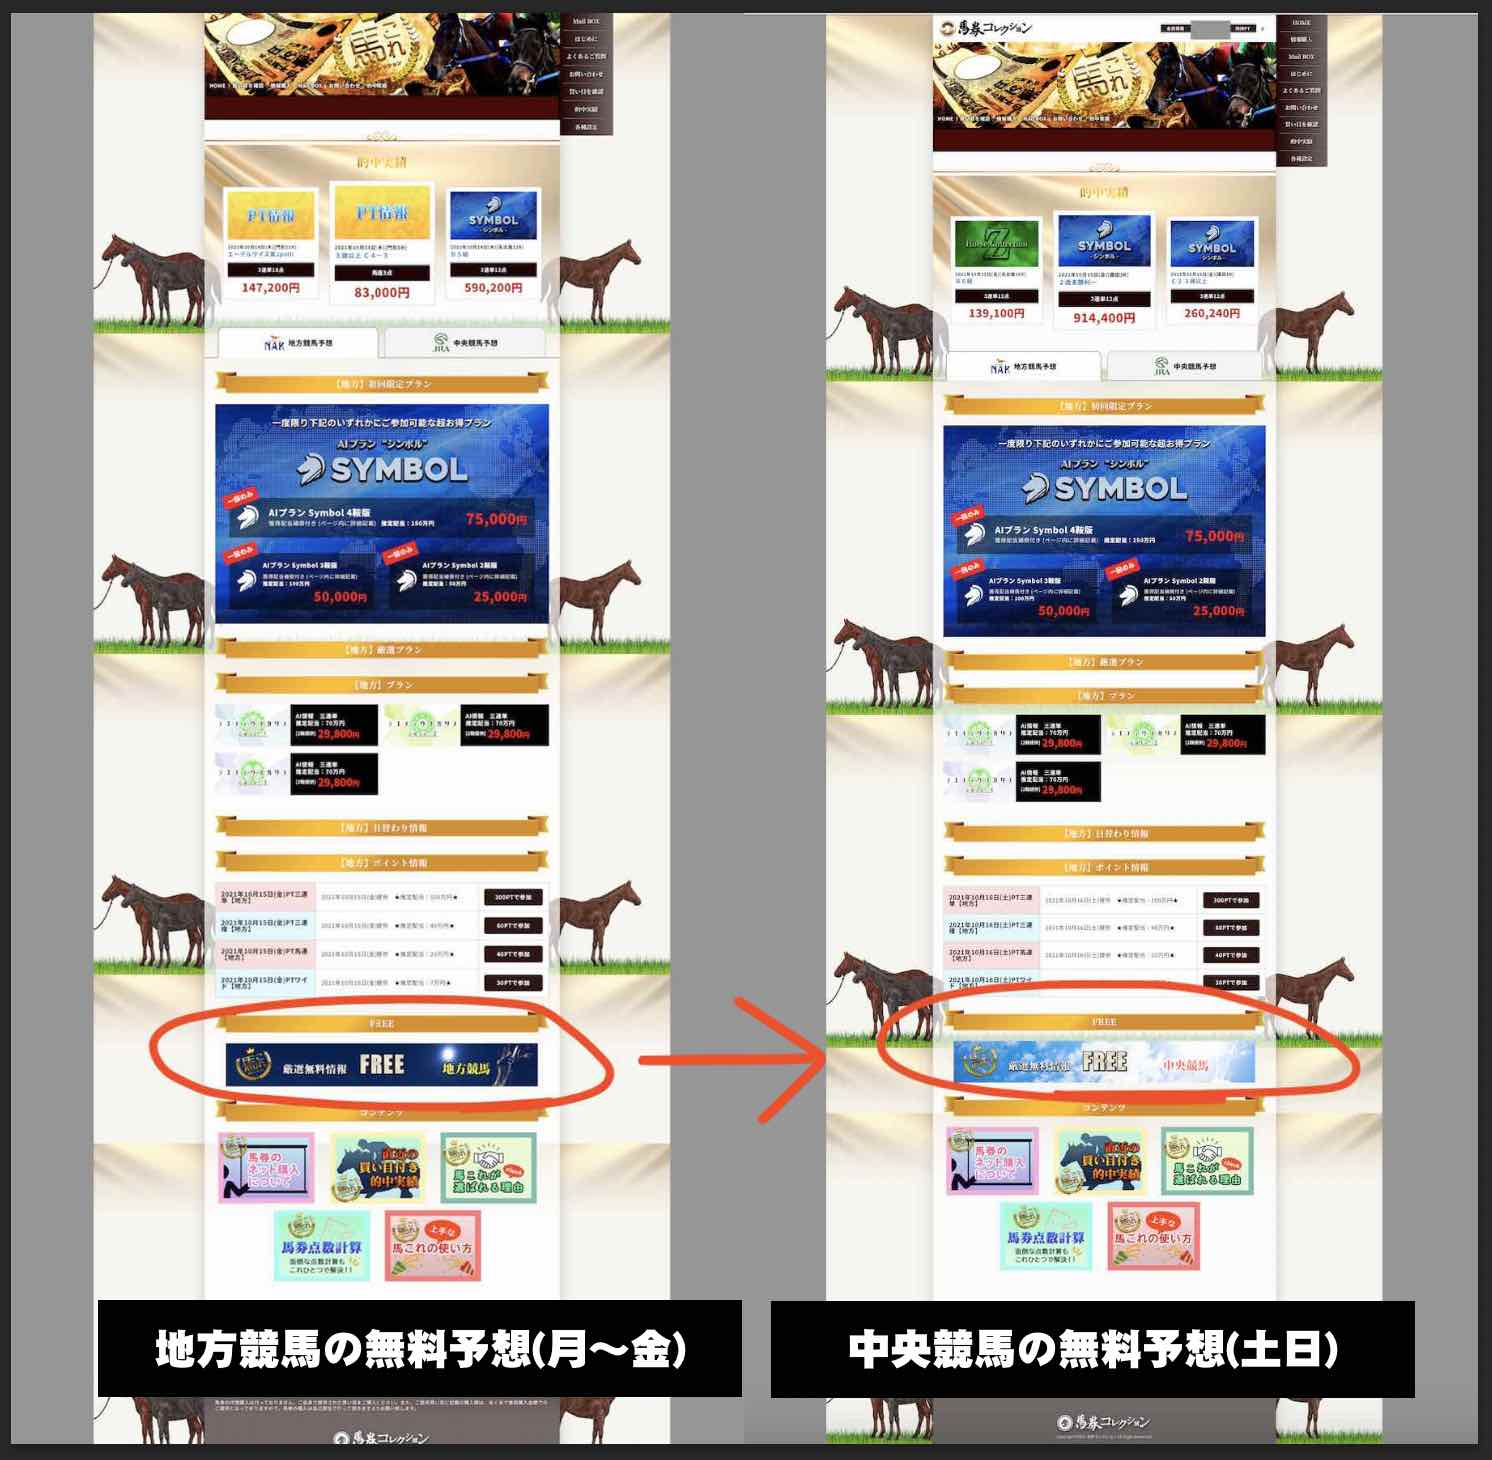 馬券コレクション(馬これ)という競馬予想サイトの無料予想を確認する